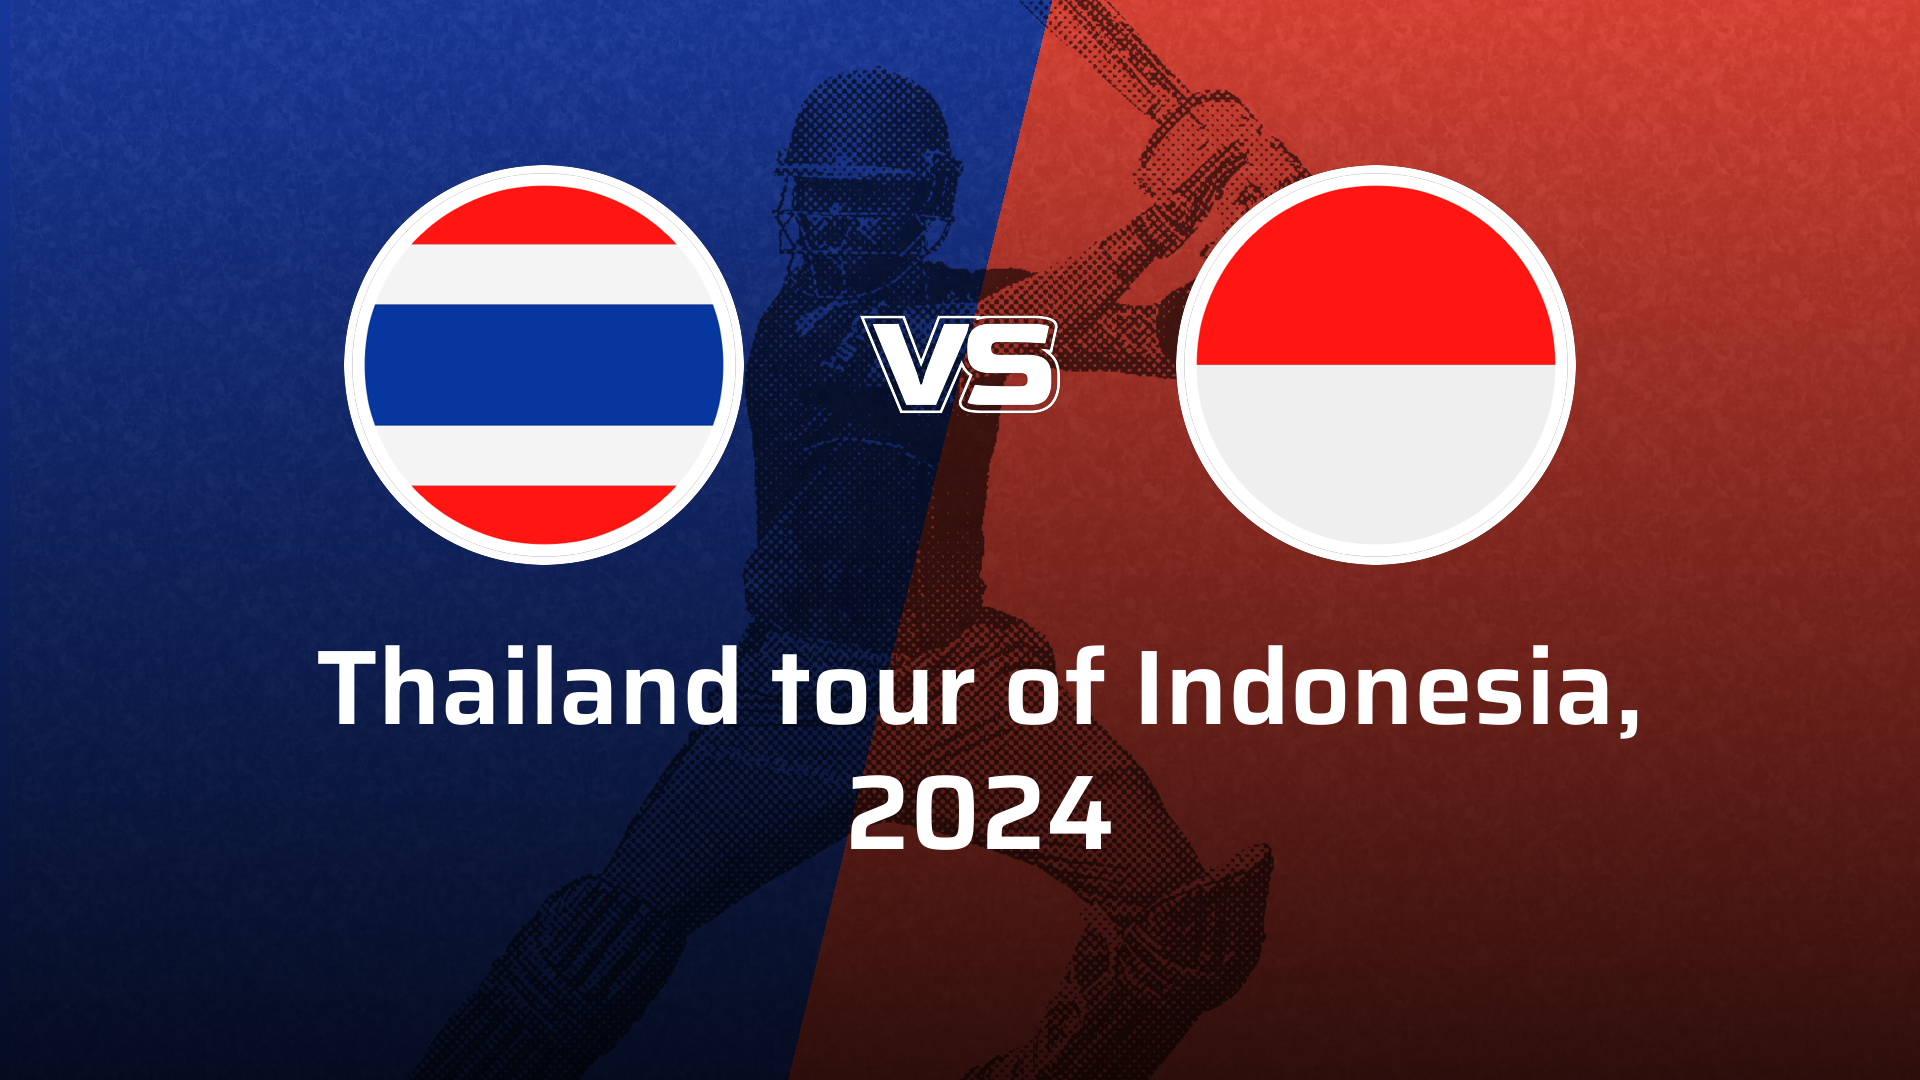 Indonesia VS Thailand